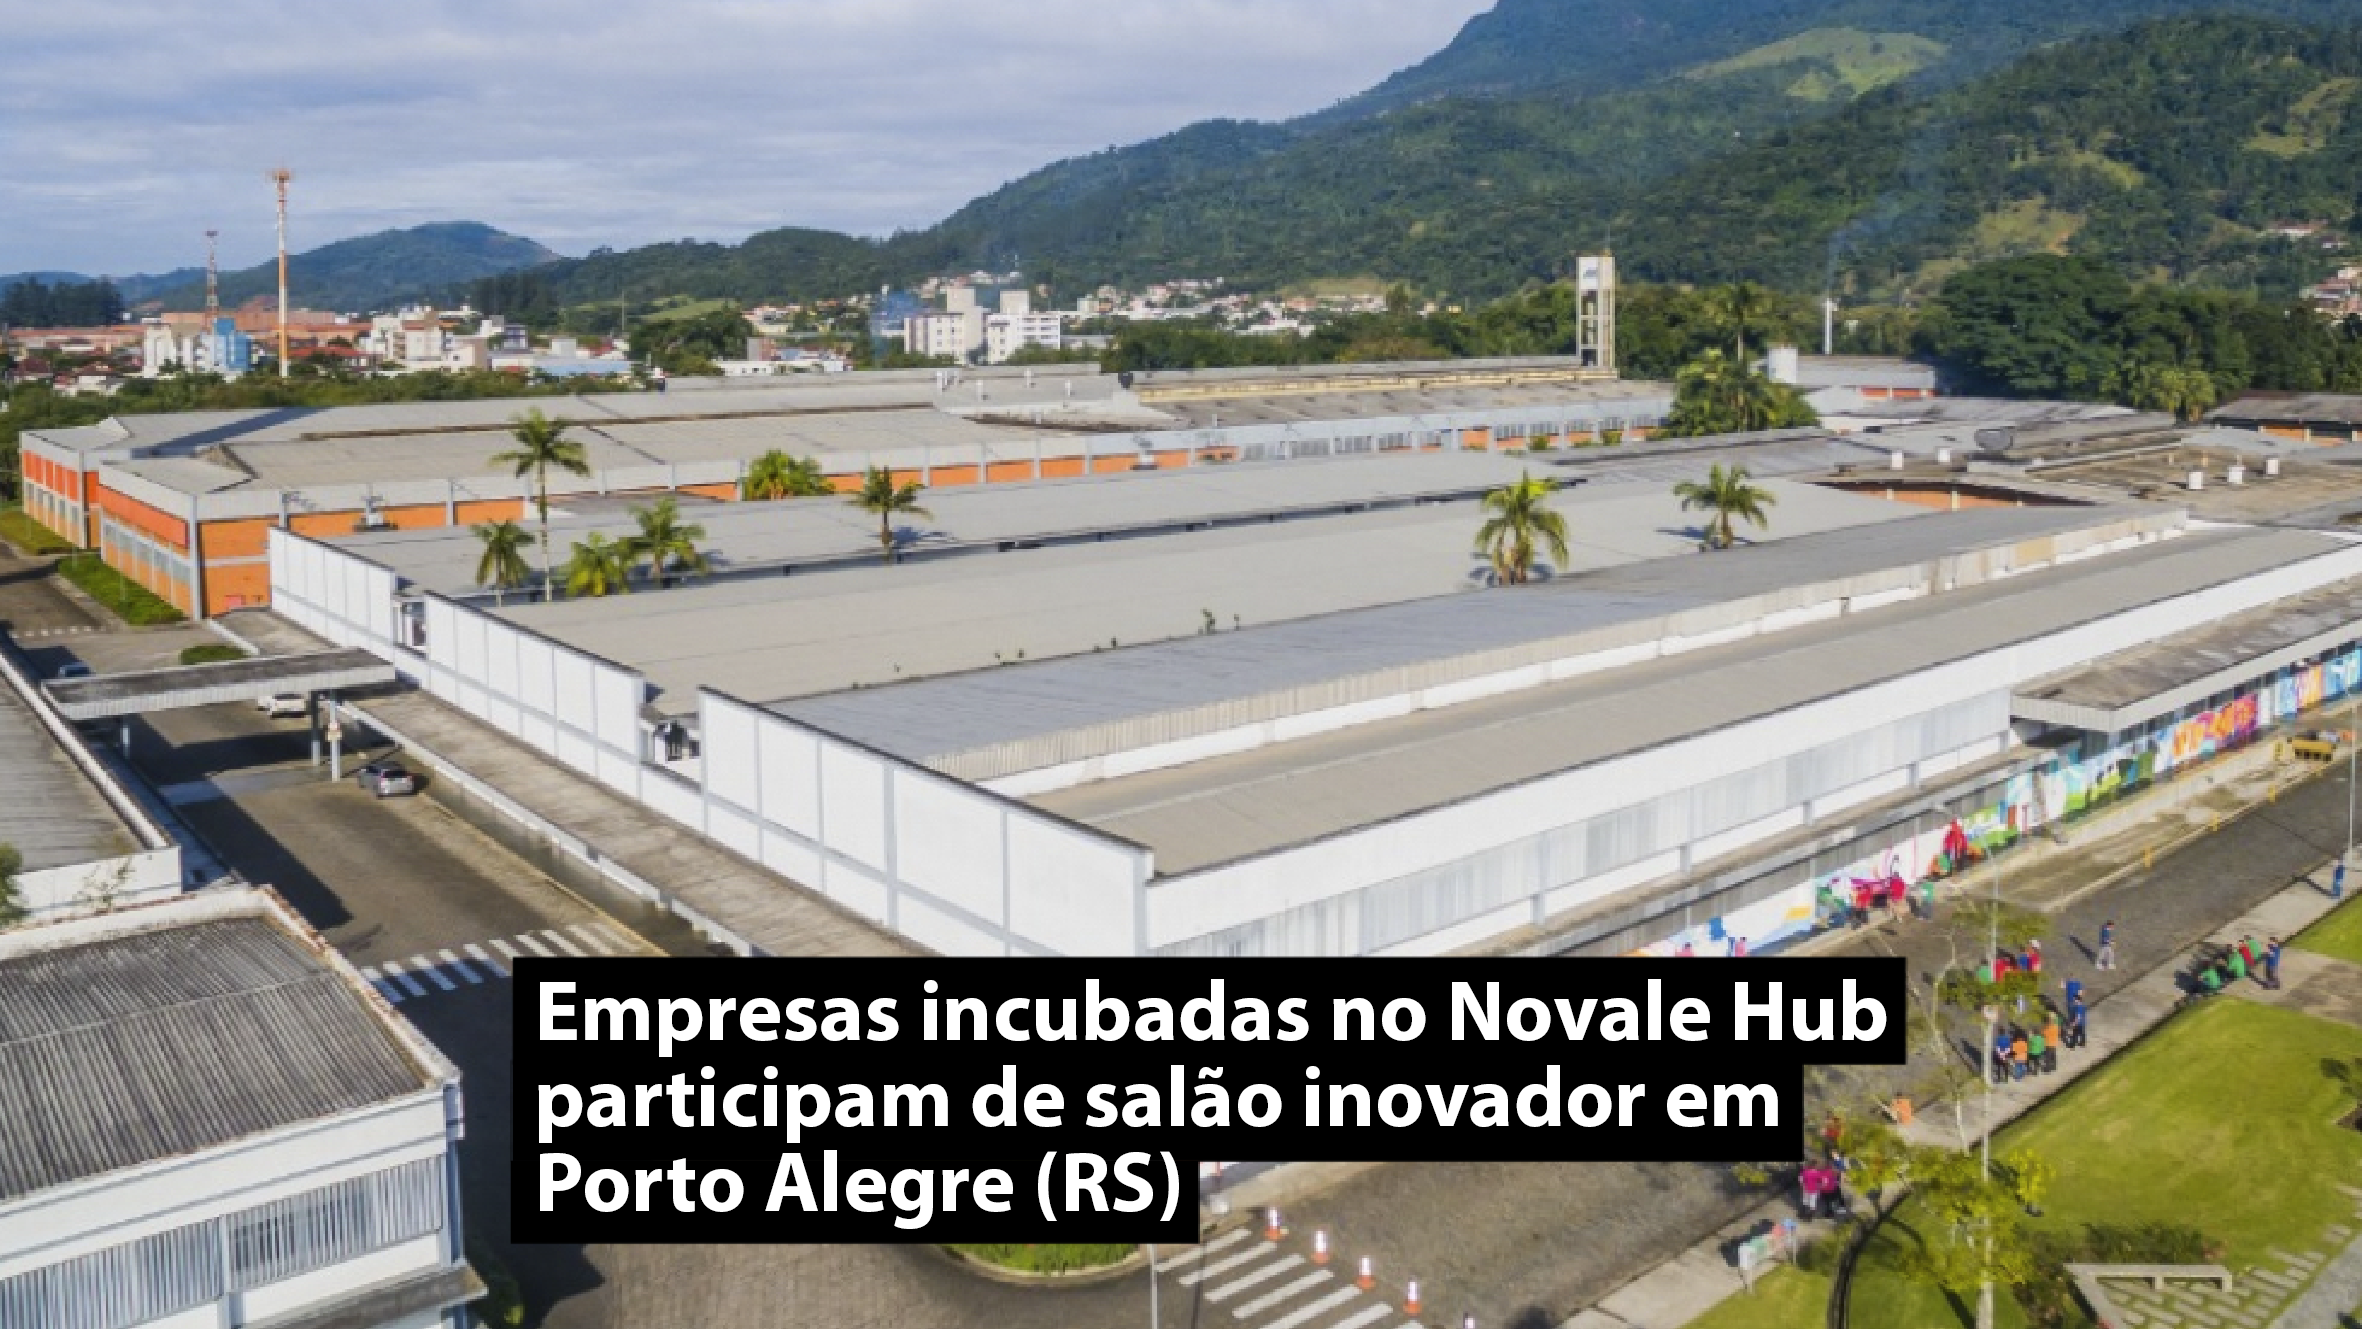 Empresas incubadas no Novale Hub participam de salão inovador em Porto Alegre (RS)